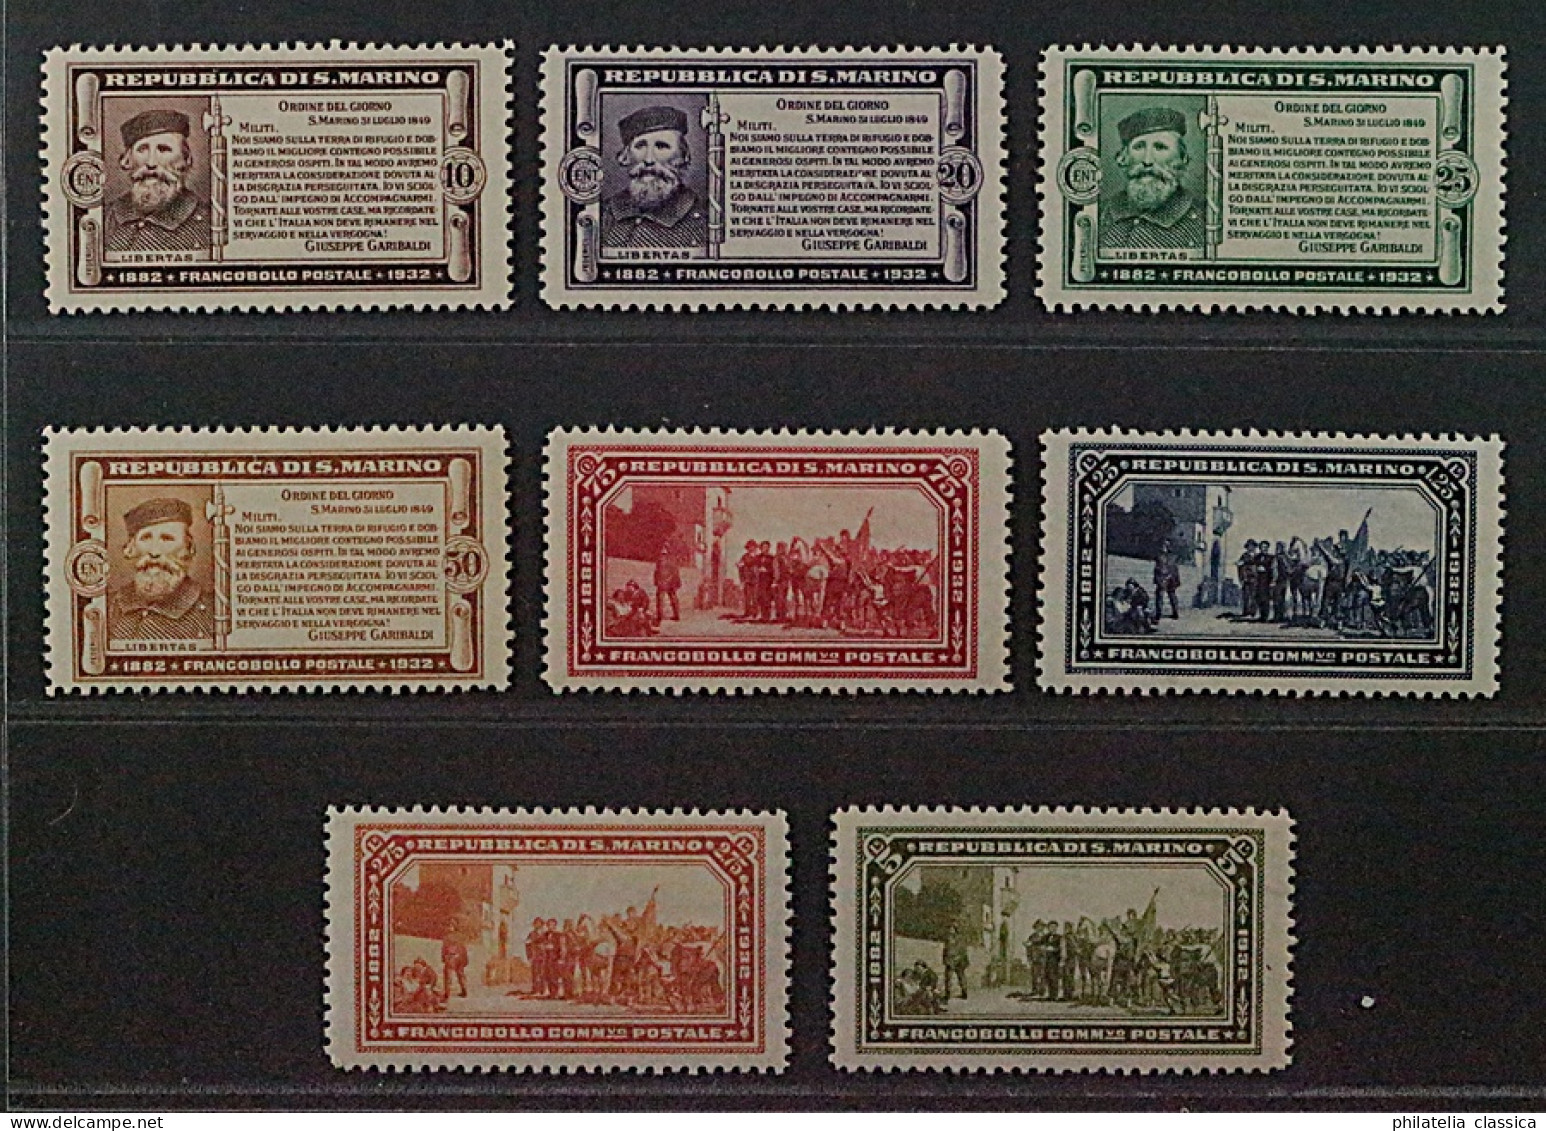 1932, SAN MARINO 184-91 * Garibaldi, 8 Werte Komplett, Originalgummi, 1300,-€ - Unused Stamps